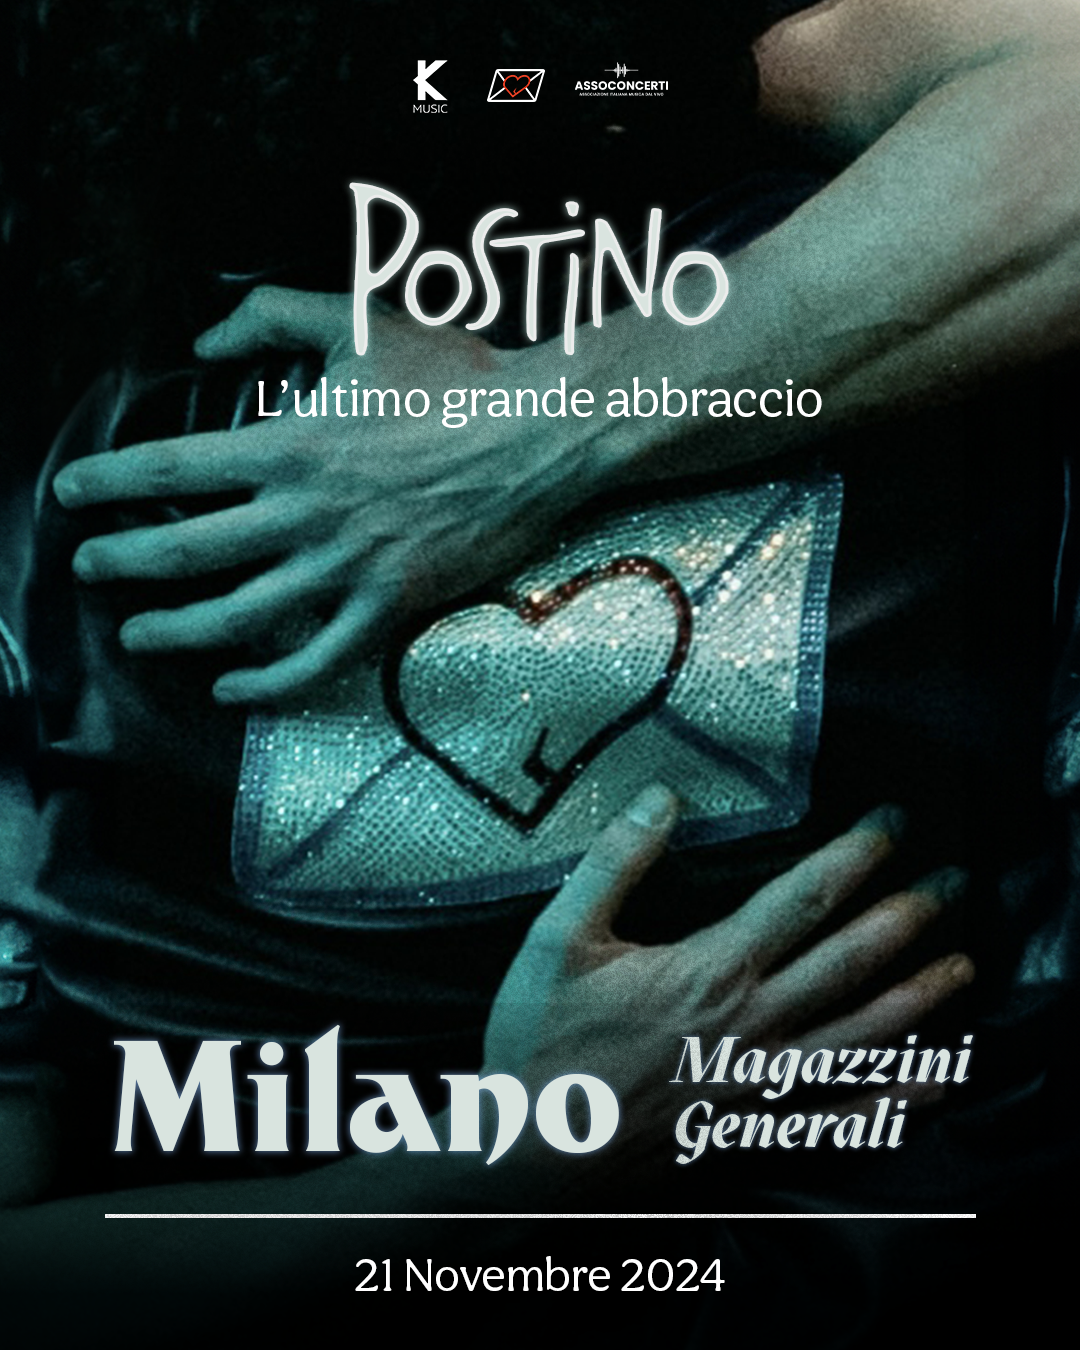 Milano - Magazzini Generali - 21 Novembre 2024 -Postino